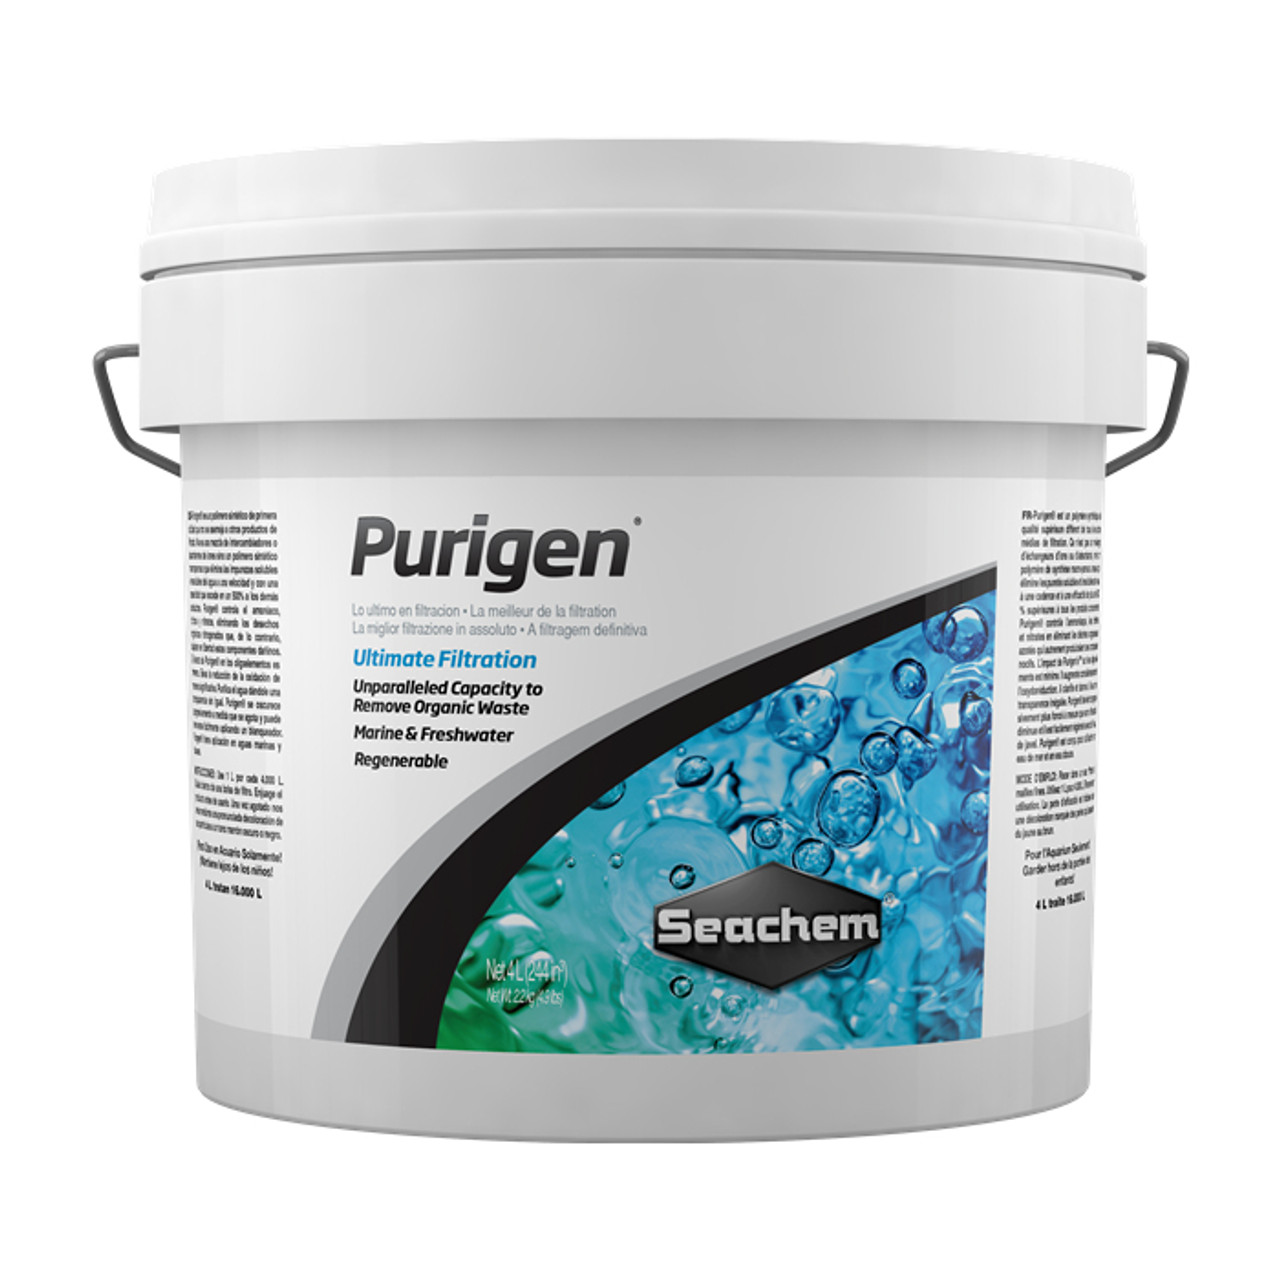 Seachem Purigen Filter Media 4000 ml. - AquaCave.com